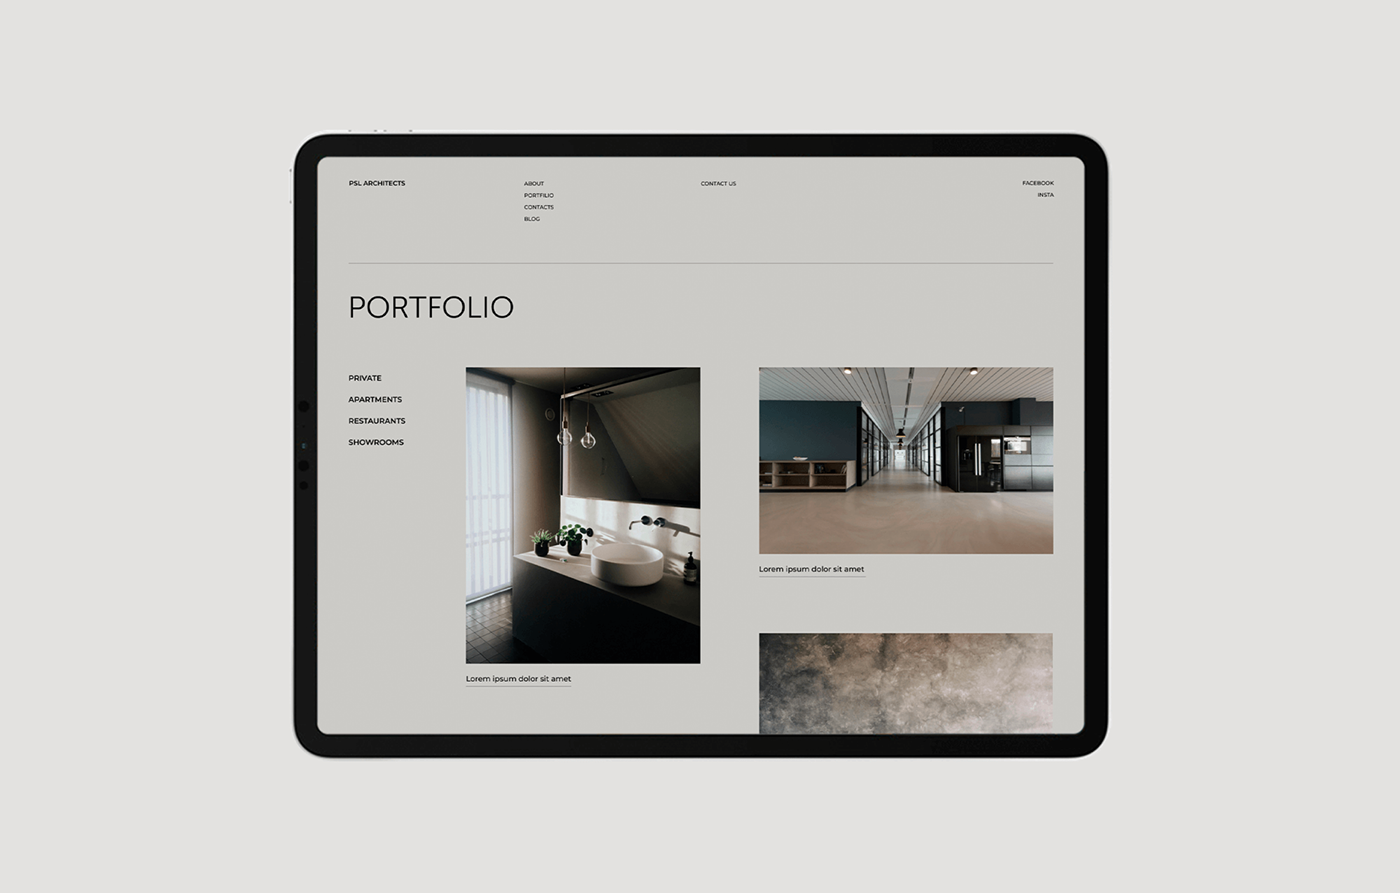 agency architecture Interior minimal studio UI ux Web Design  portfolio